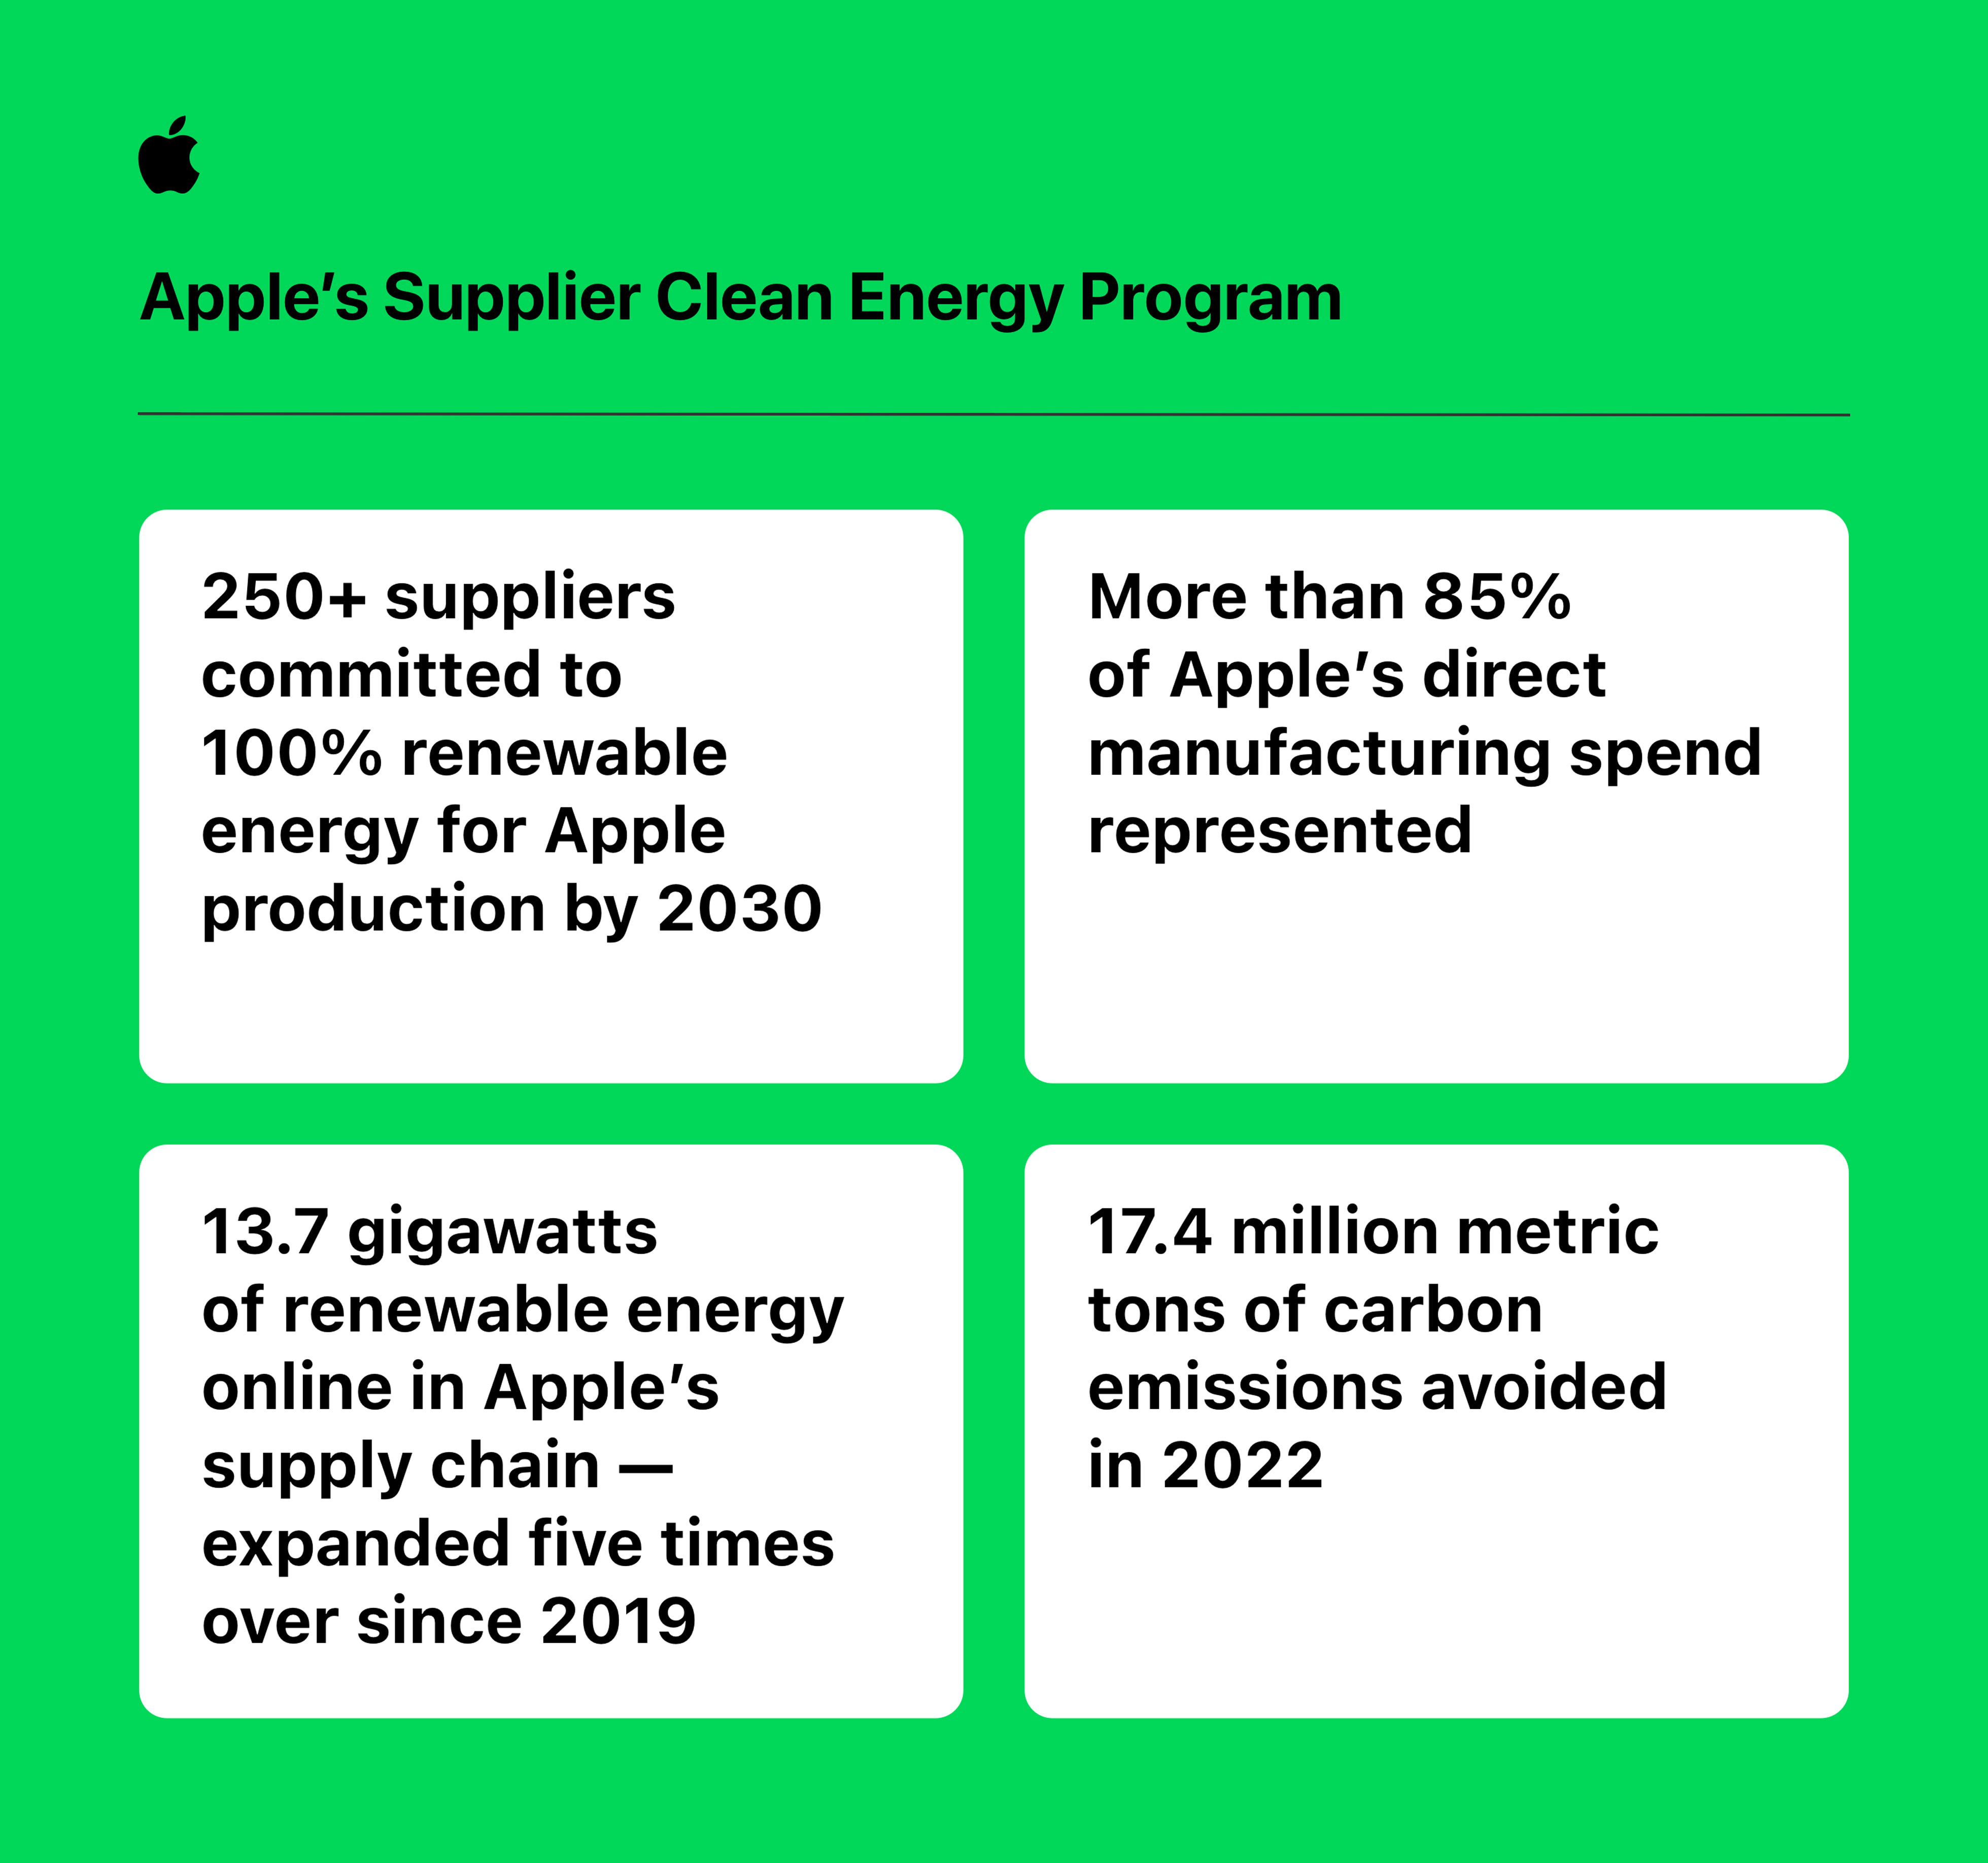 Is Apple 100% green?